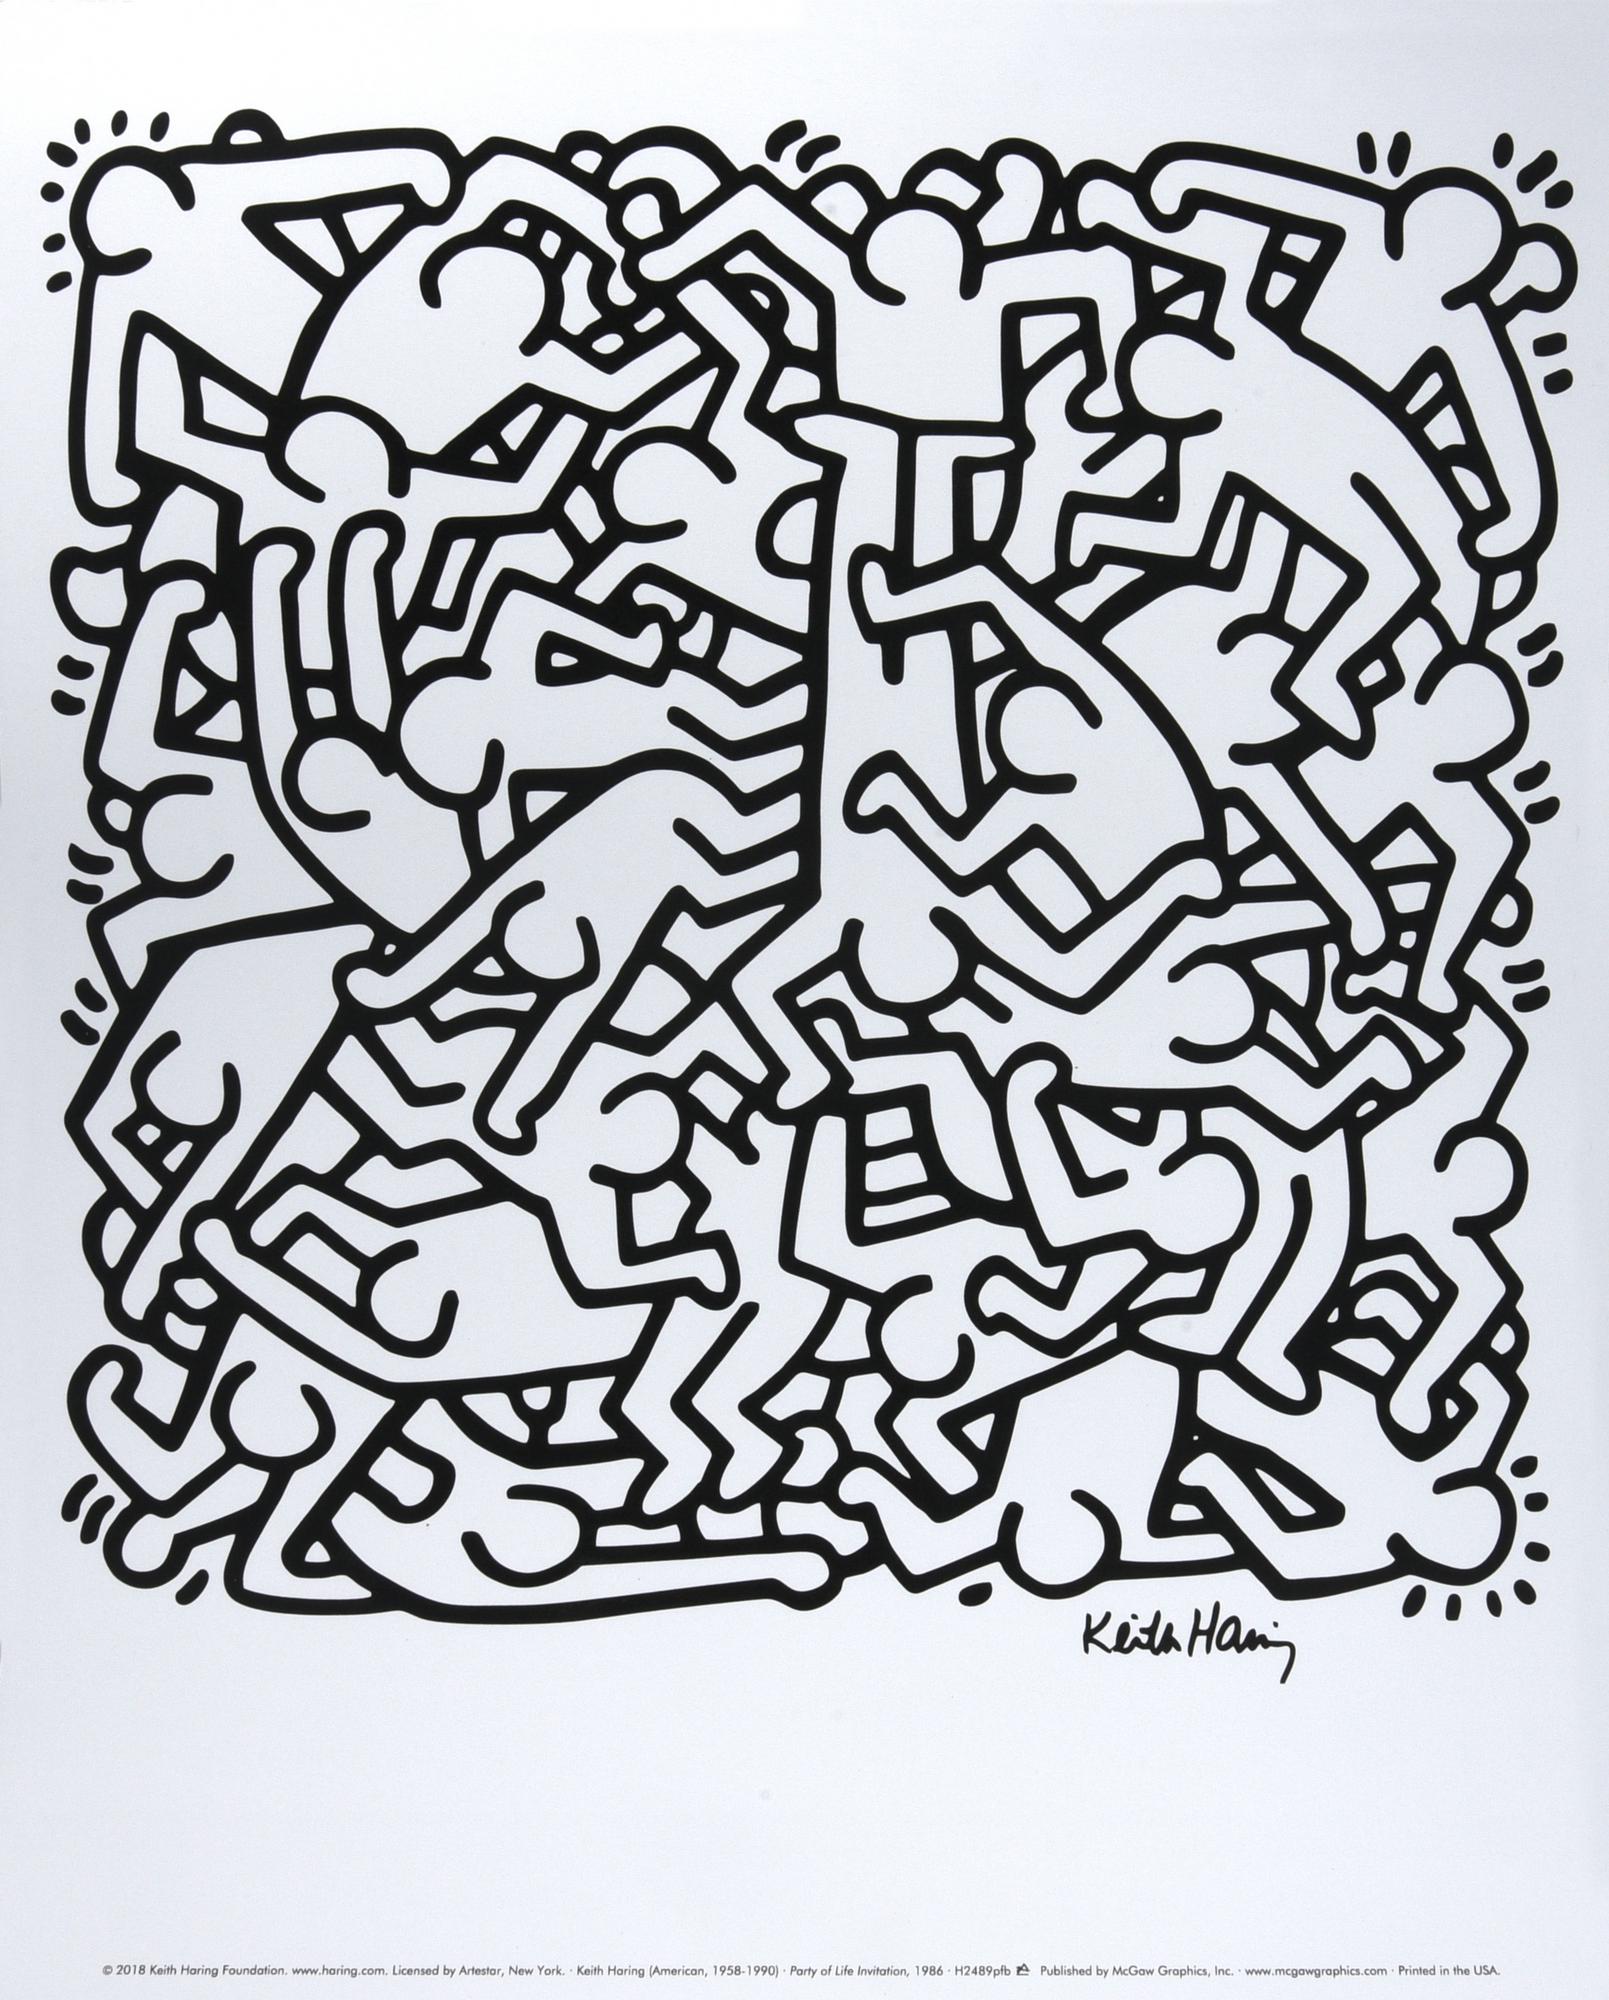 Keith Haring PARTY OF LIFE INVITATION, 1986 stampa, cm 37x30 pubblicato da...